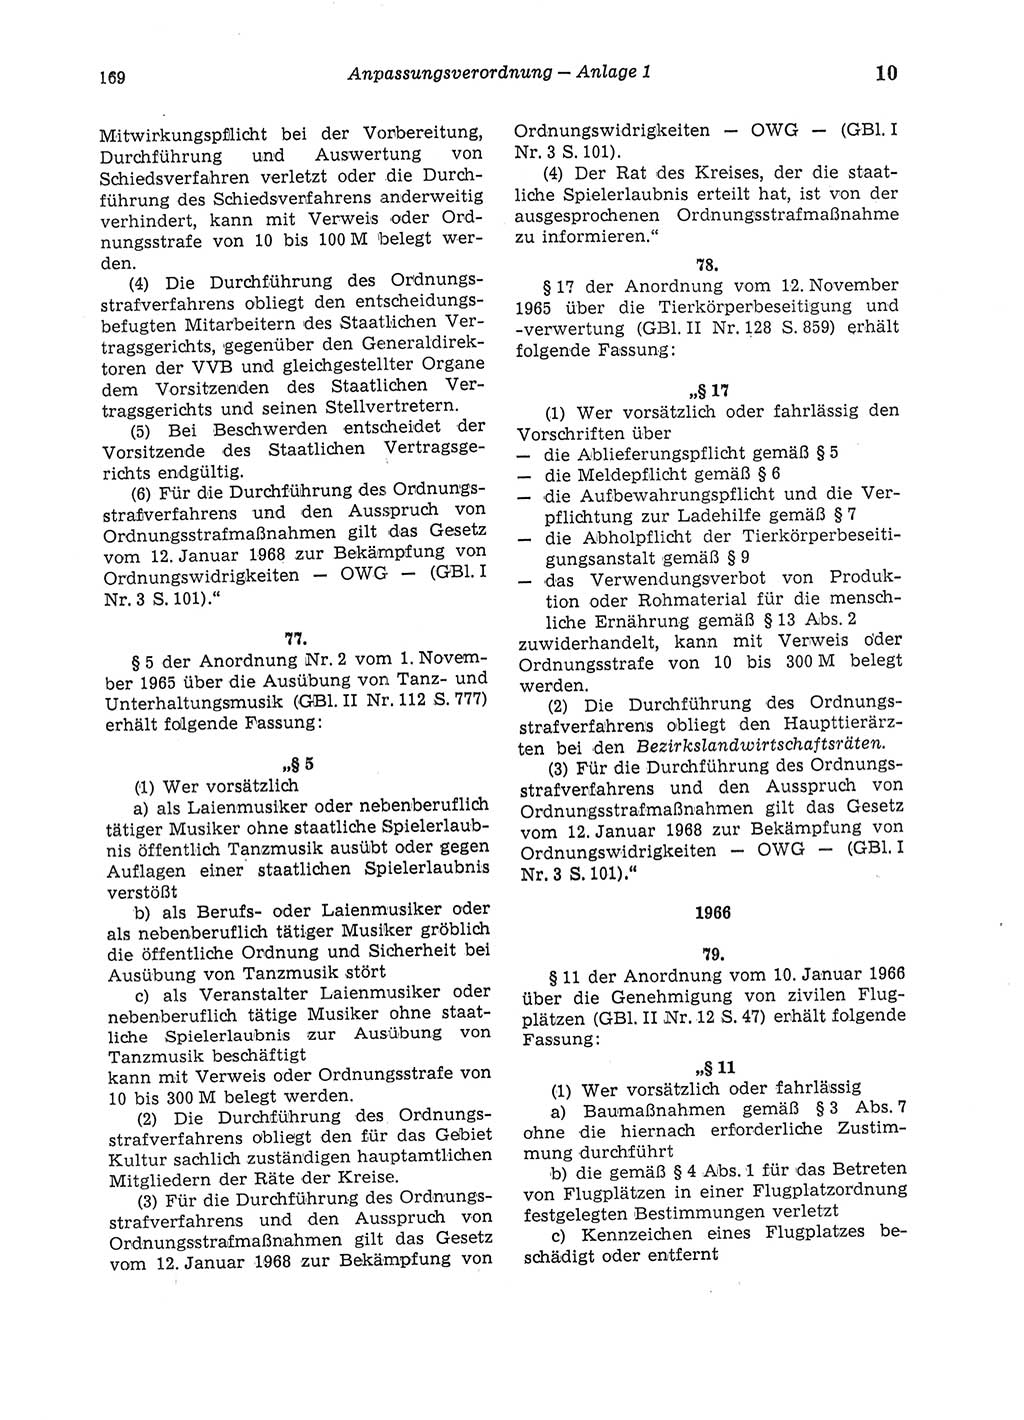 Strafgesetzbuch (StGB) der Deutschen Demokratischen Republik (DDR) und angrenzende Gesetze und Bestimmungen 1975, Seite 169 (StGB DDR Ges. Best. 1975, S. 169)